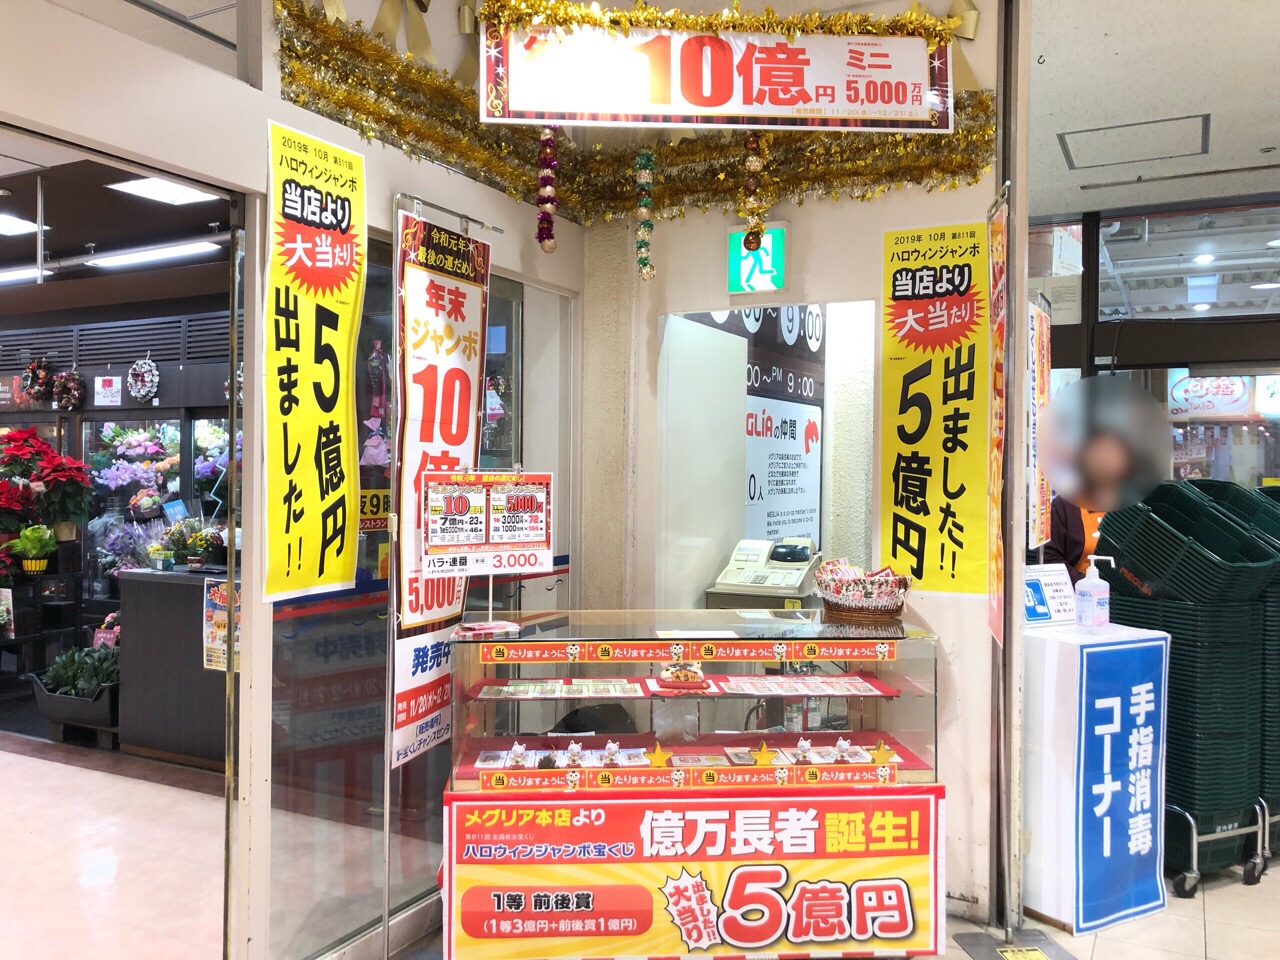 合図 生活 恥ずかしい 国立 宝くじ 売り場 Okinawa Bussan Jp